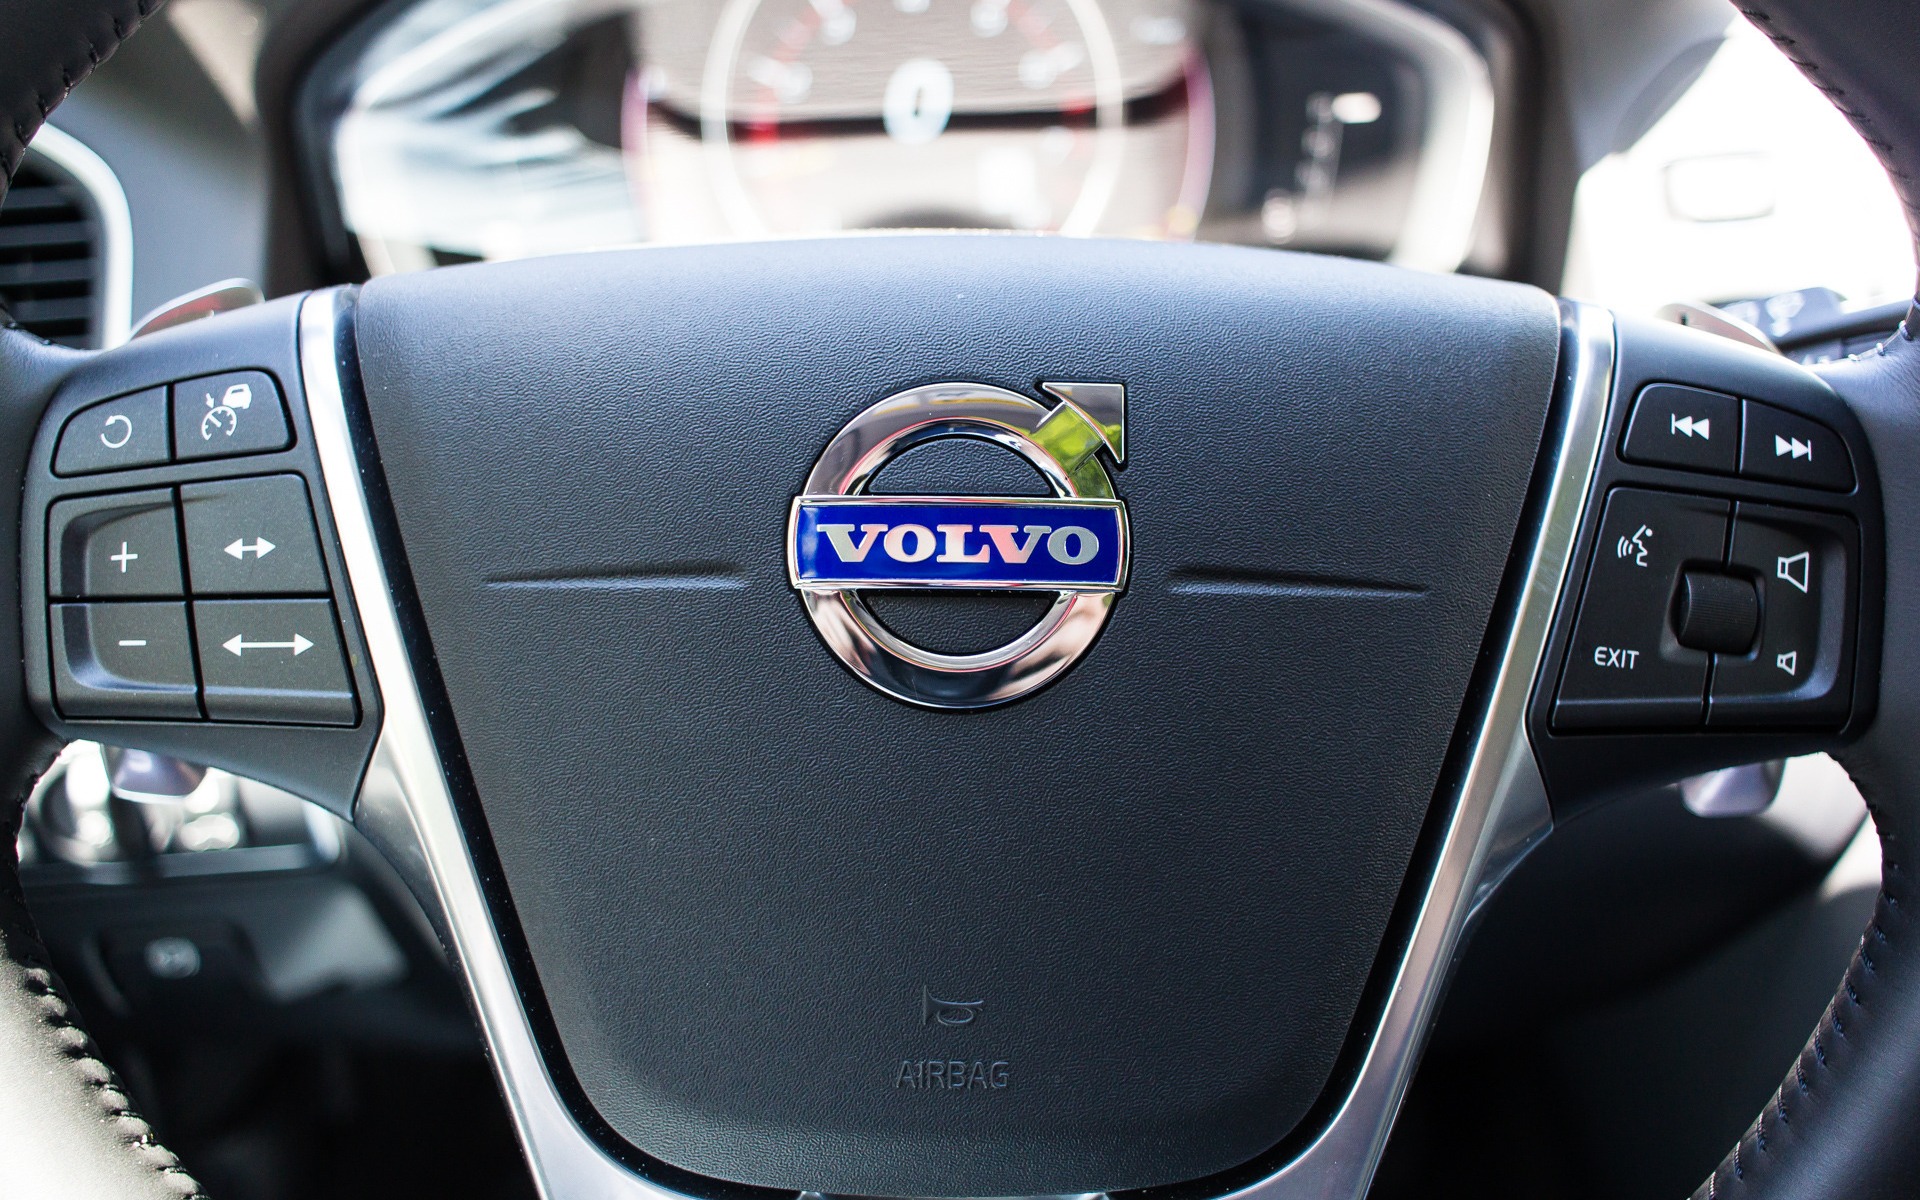 Volvo XC60